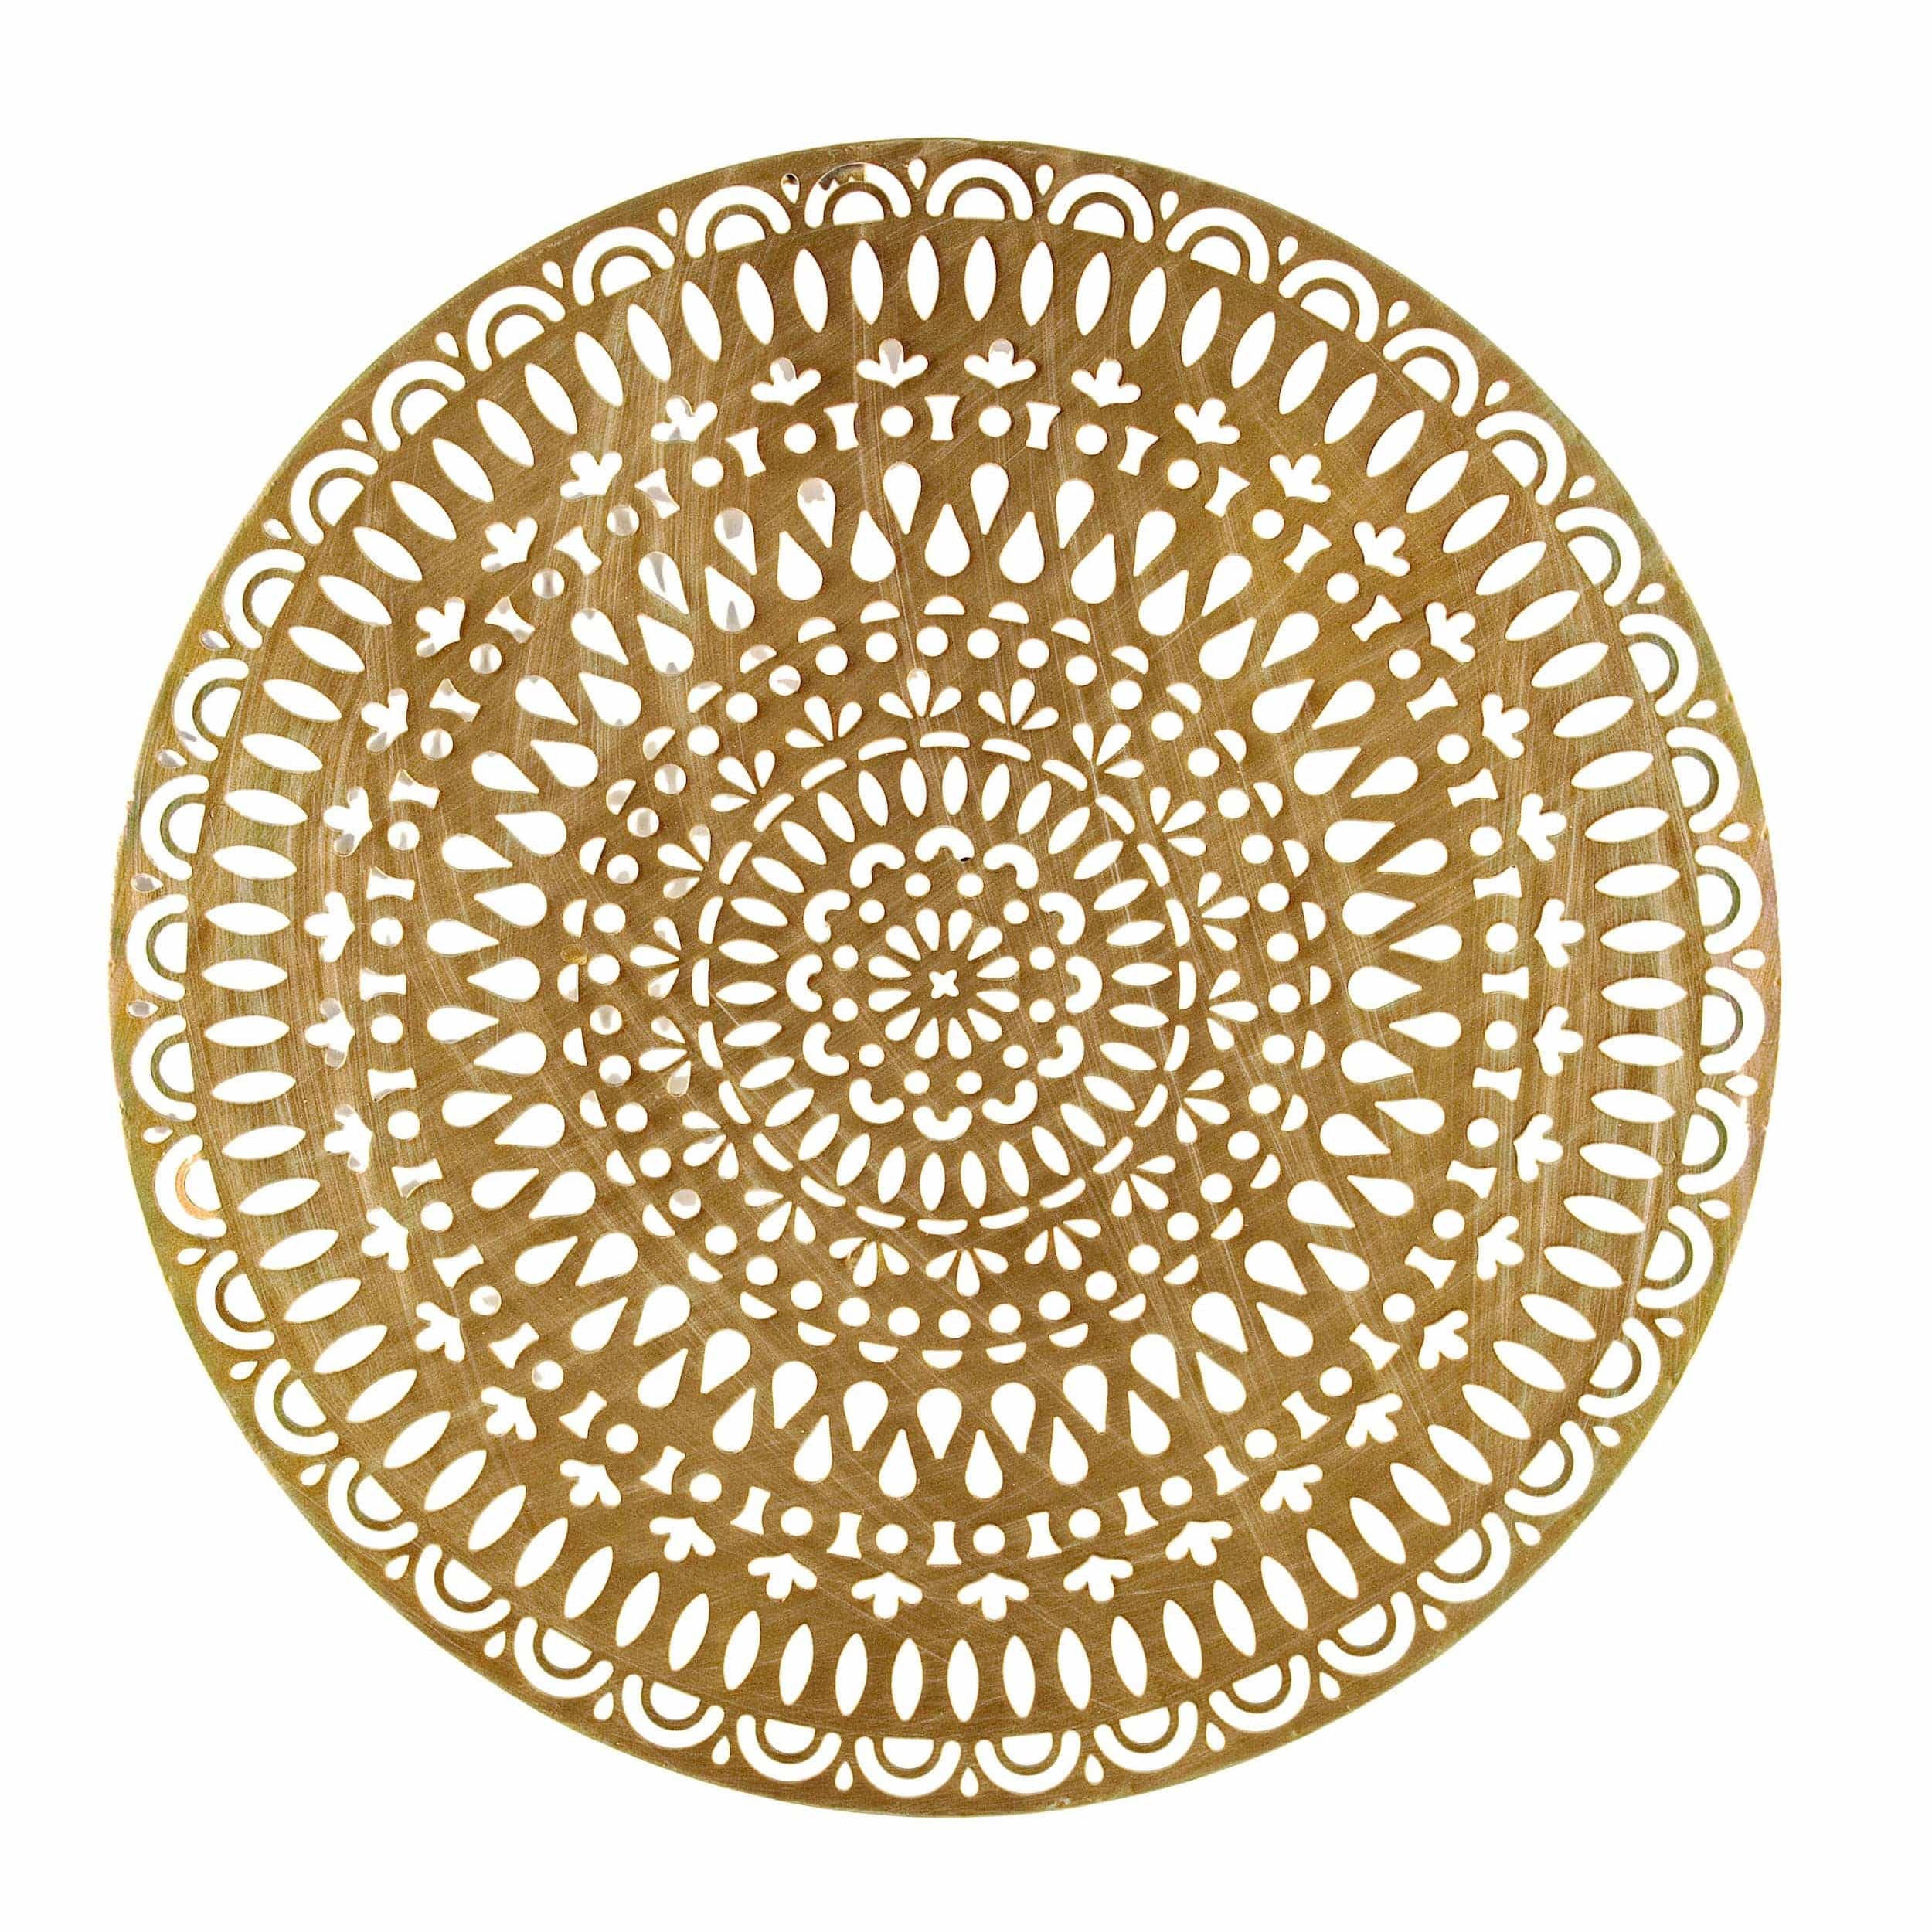 Bizzotto Decoratiune de perete din metal, Adhira Round Auriu Antichizat, Ø63 cm